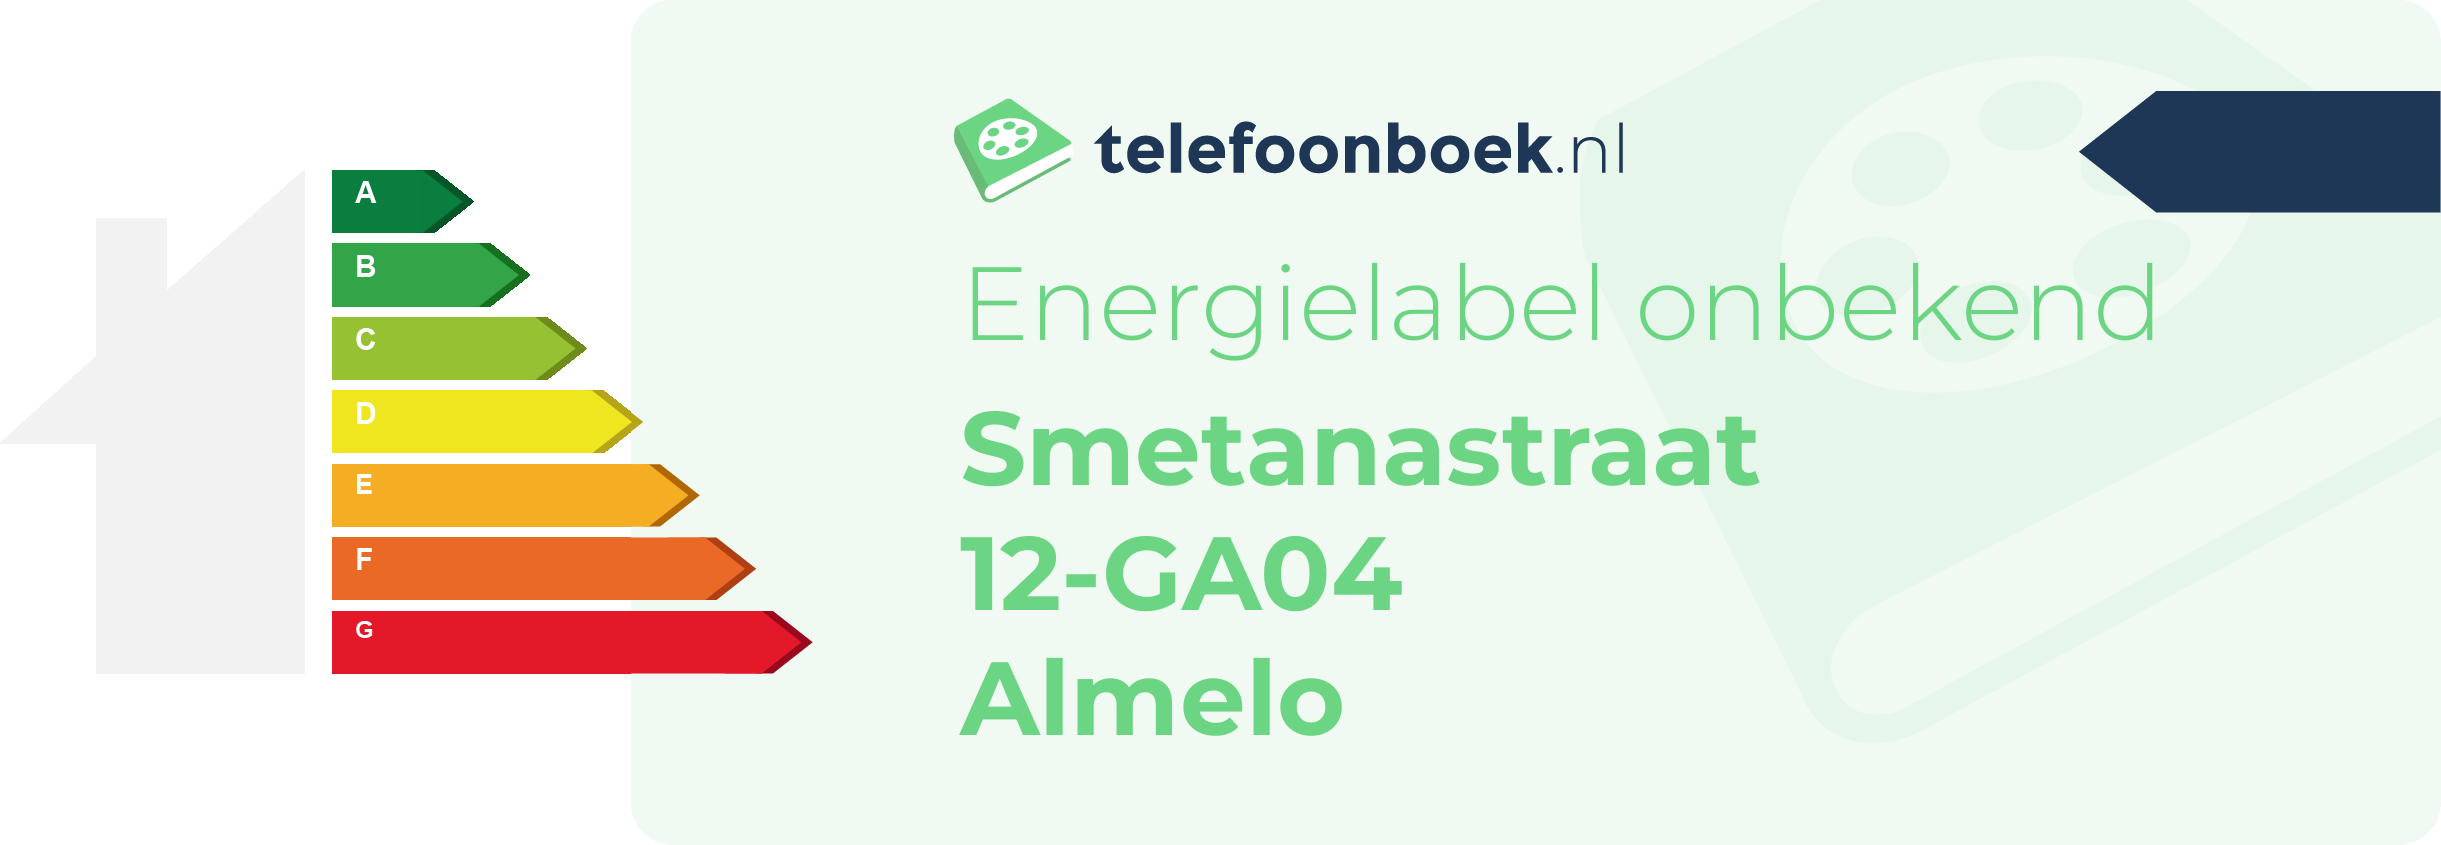 Energielabel Smetanastraat 12-GA04 Almelo